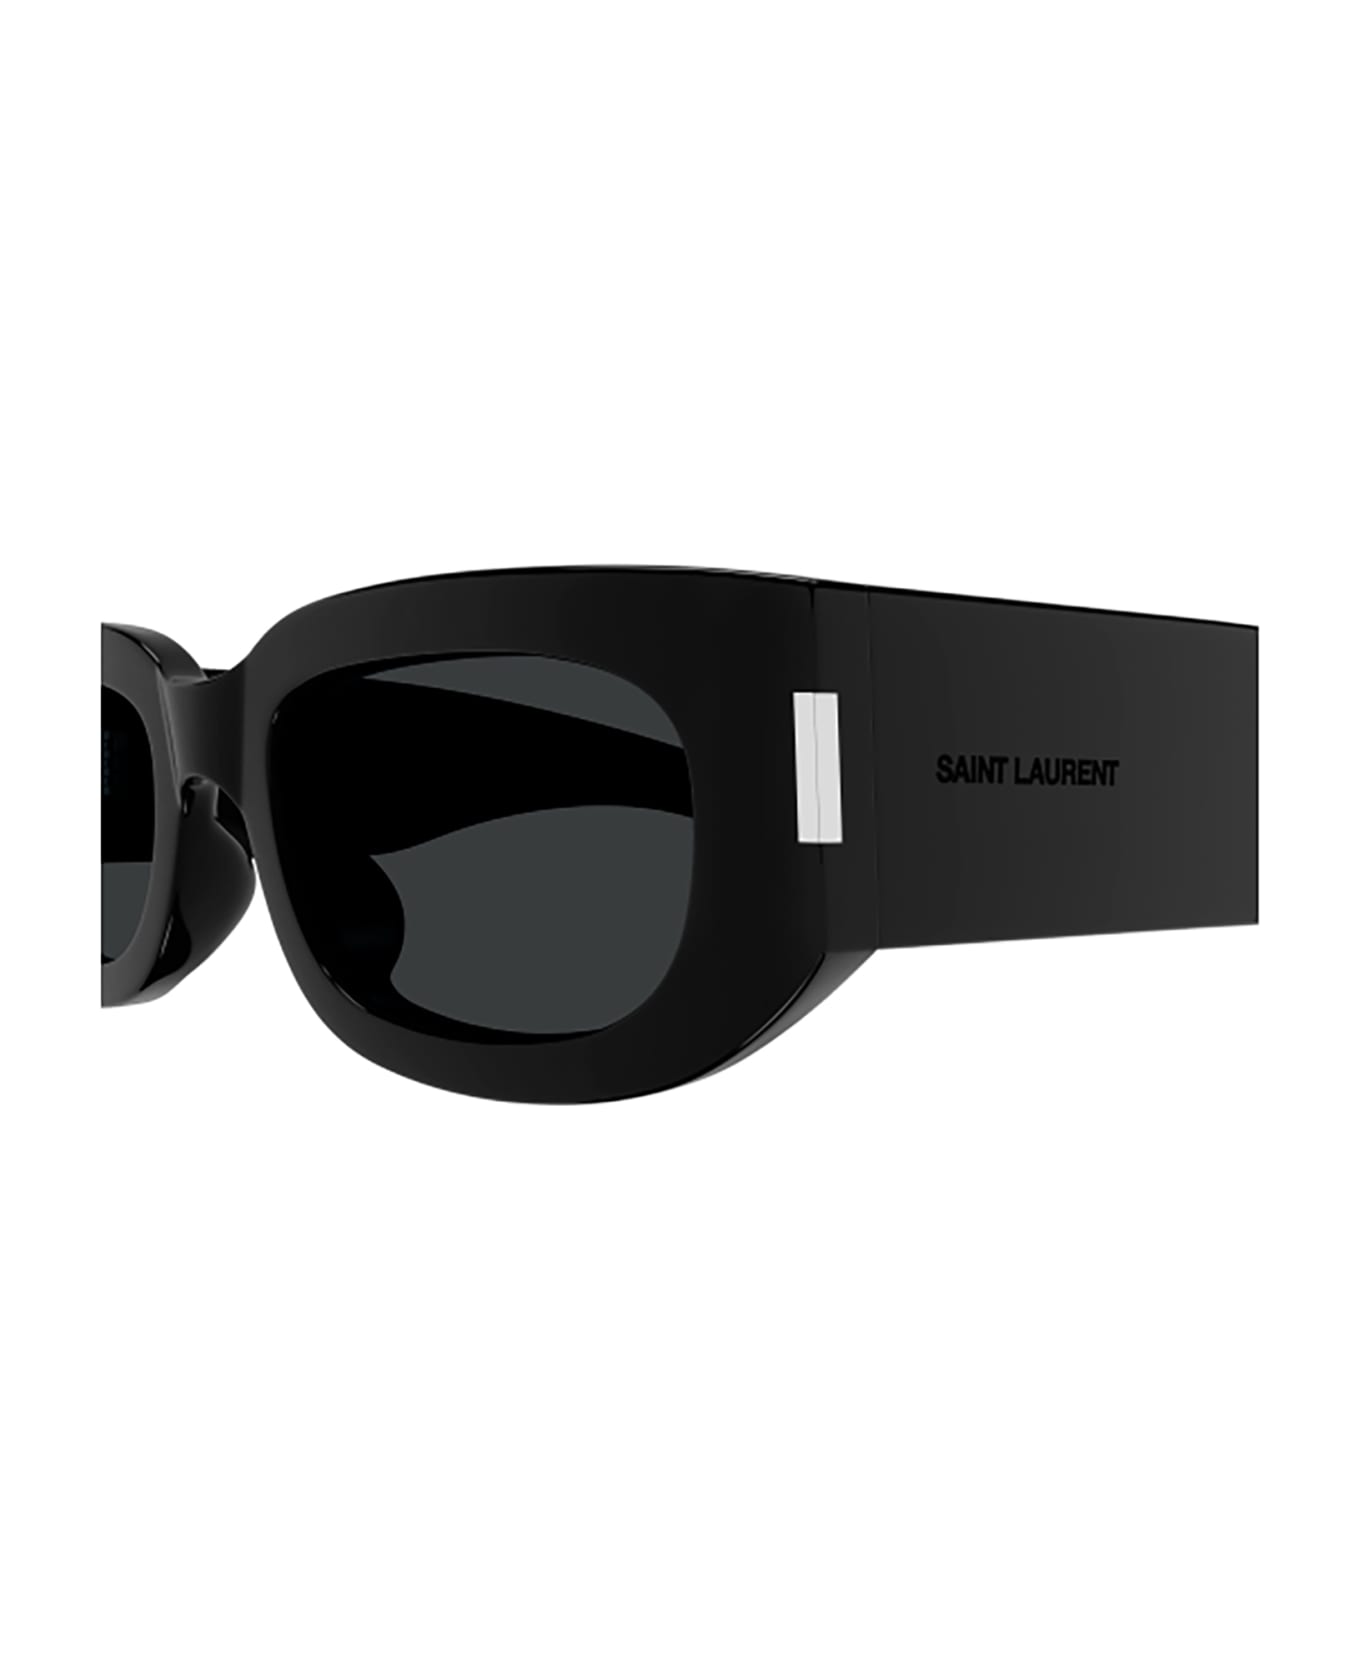 Saint Laurent Eyewear Sl 697 Sunglasses - 001 black black black